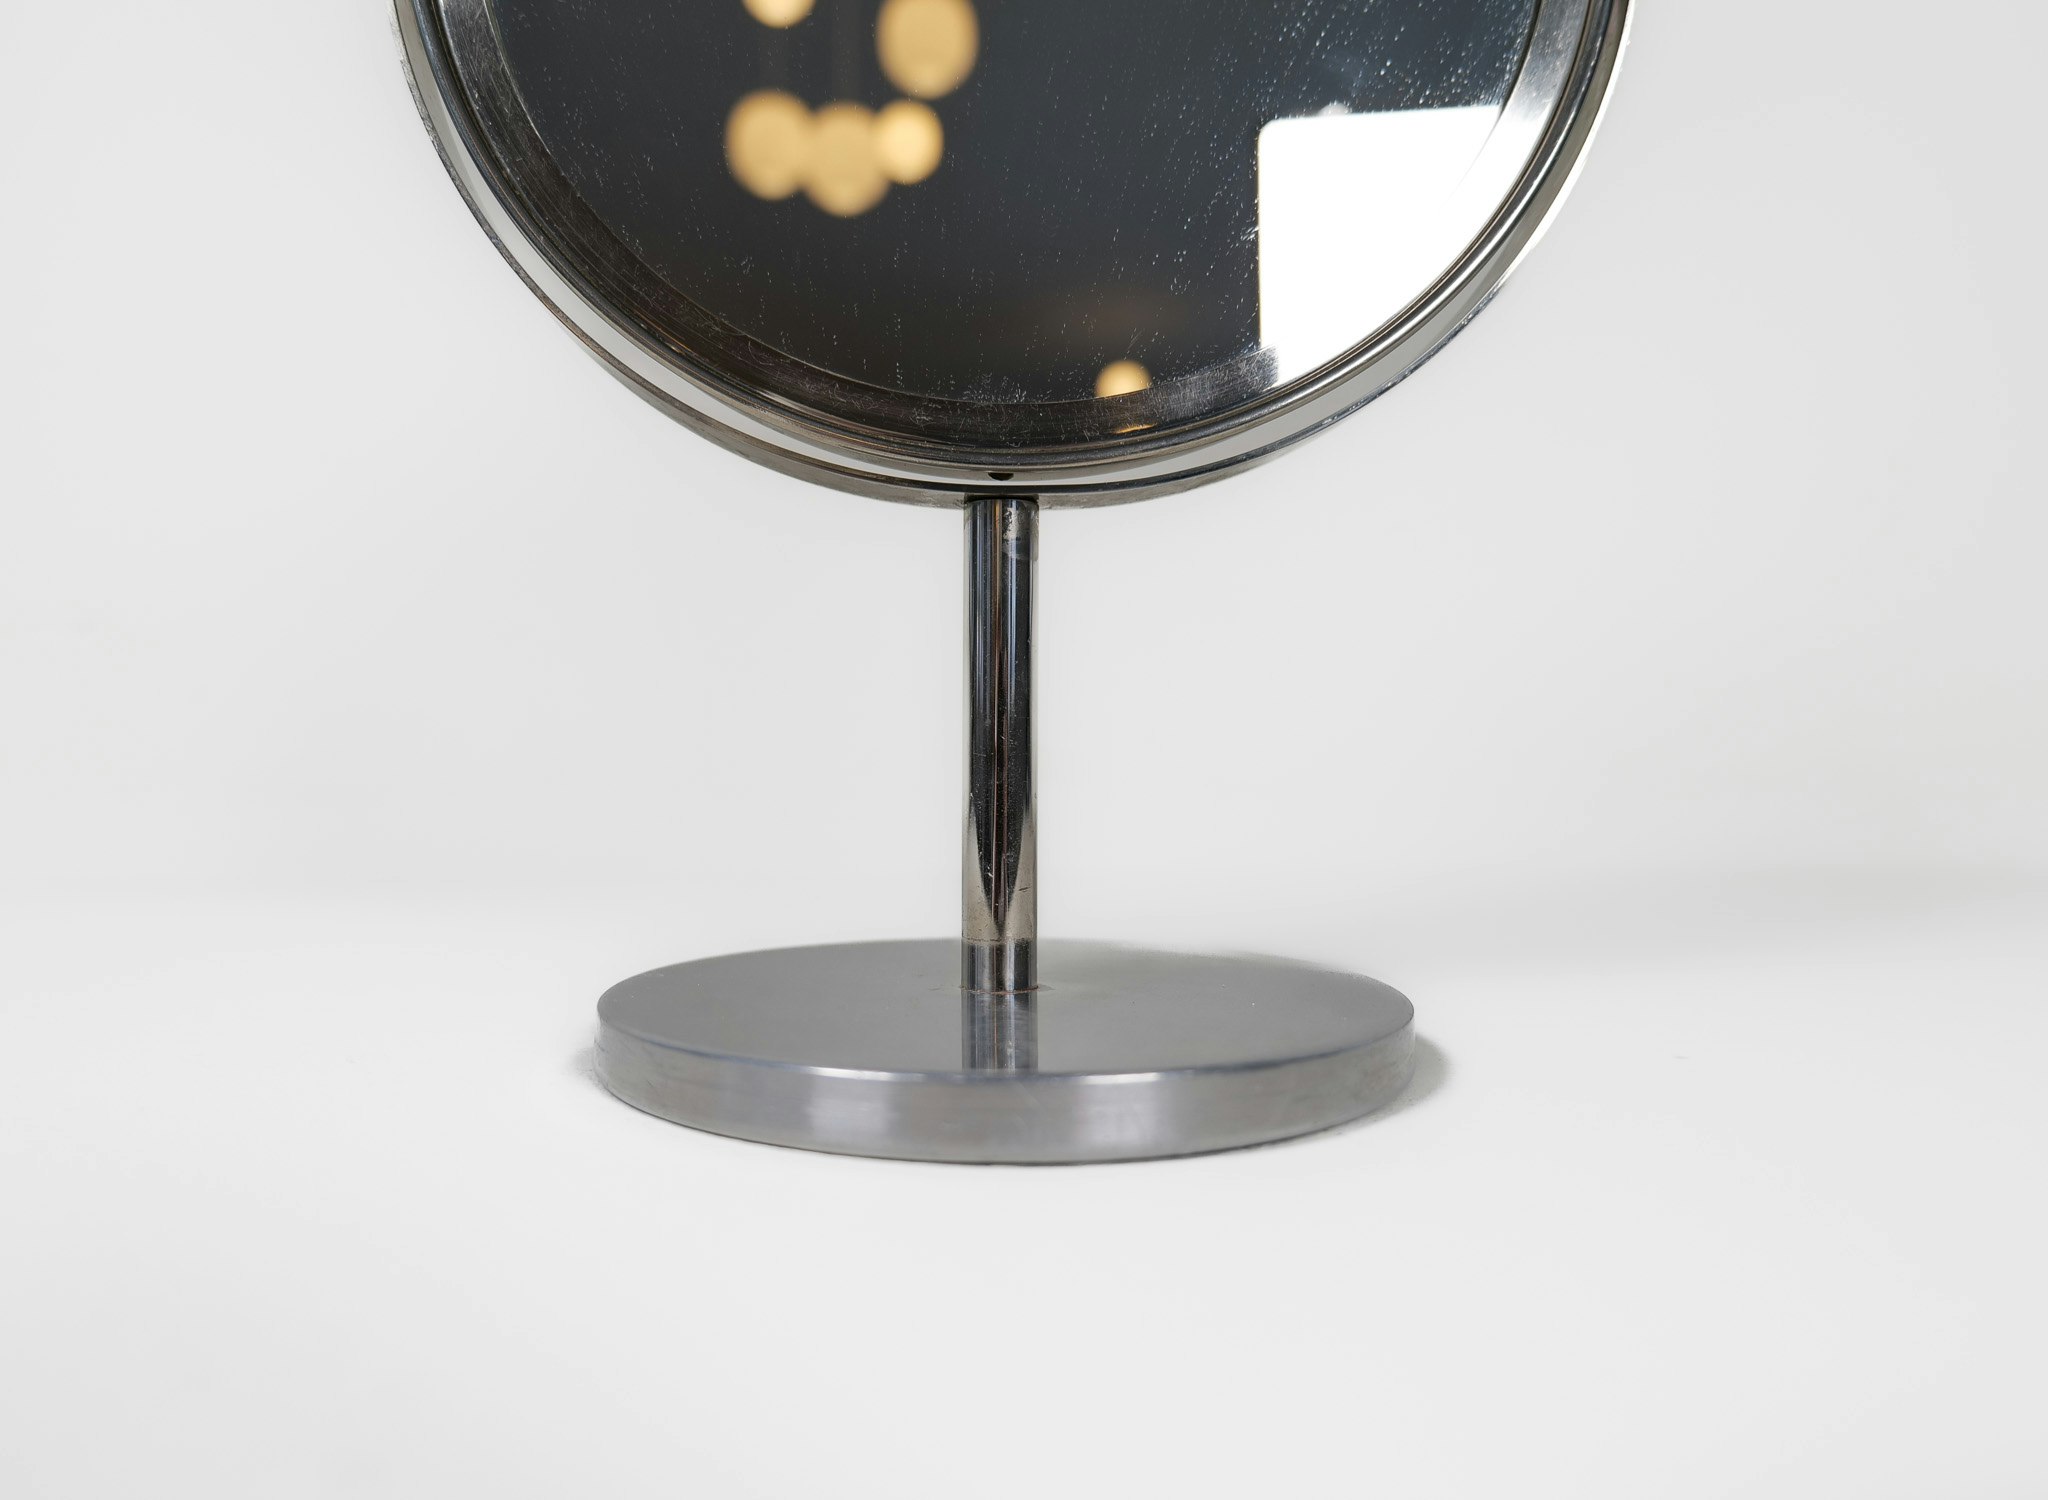 Midcentury Modern Hans-Agne Jakobsson Chrome  Vanity Table Mirror, Sweden